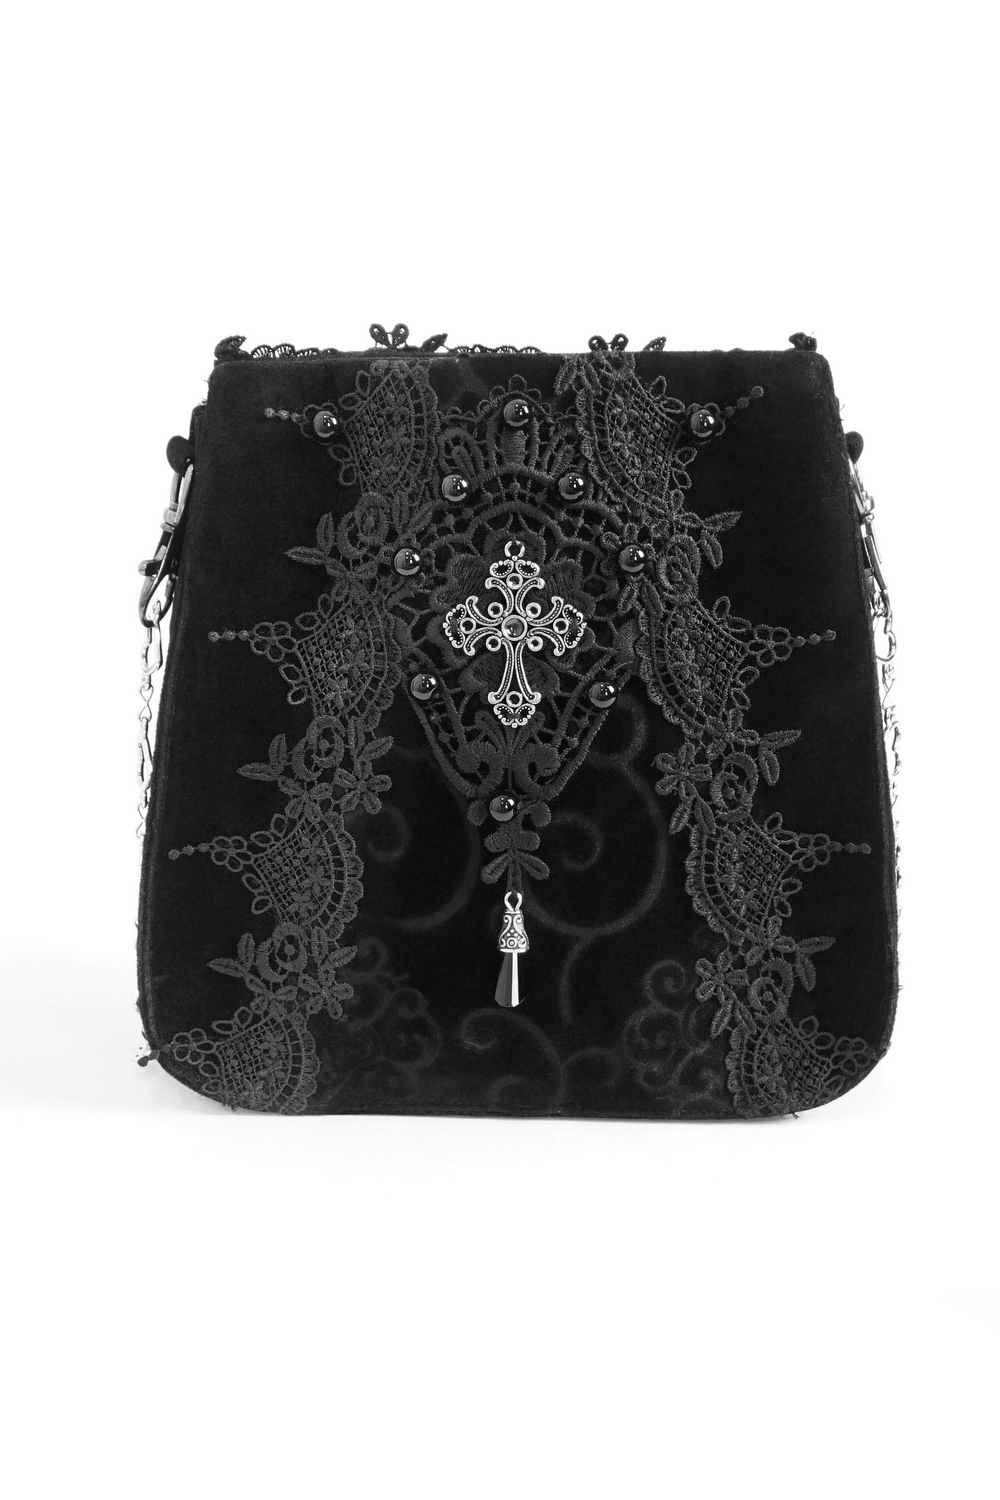 Elegante Damen-Umhängetasche mit Gothic-Blumenstickerei